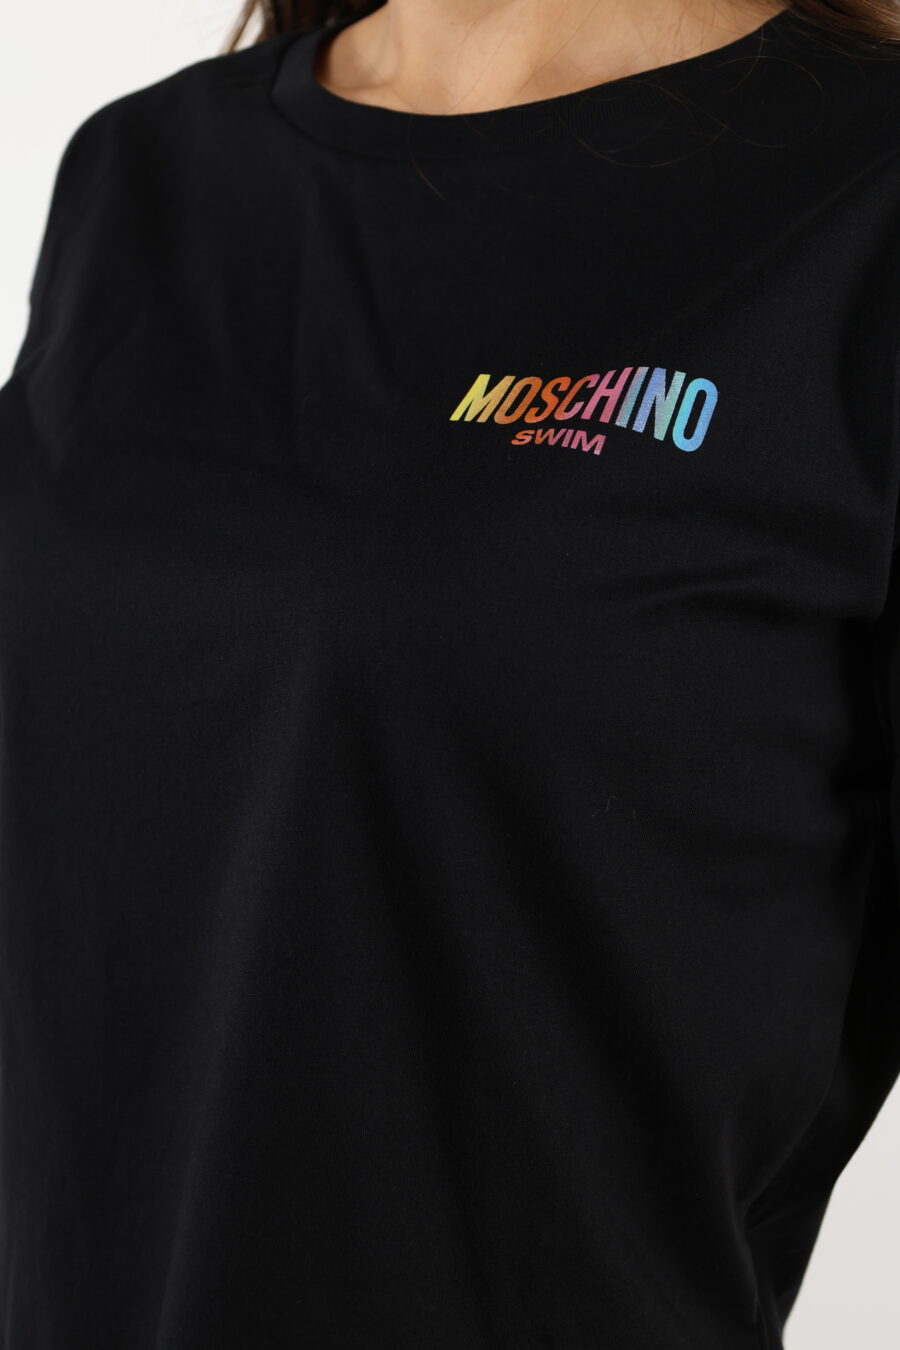 Camiseta negra "oversize" con minilogo multicolor - 110504